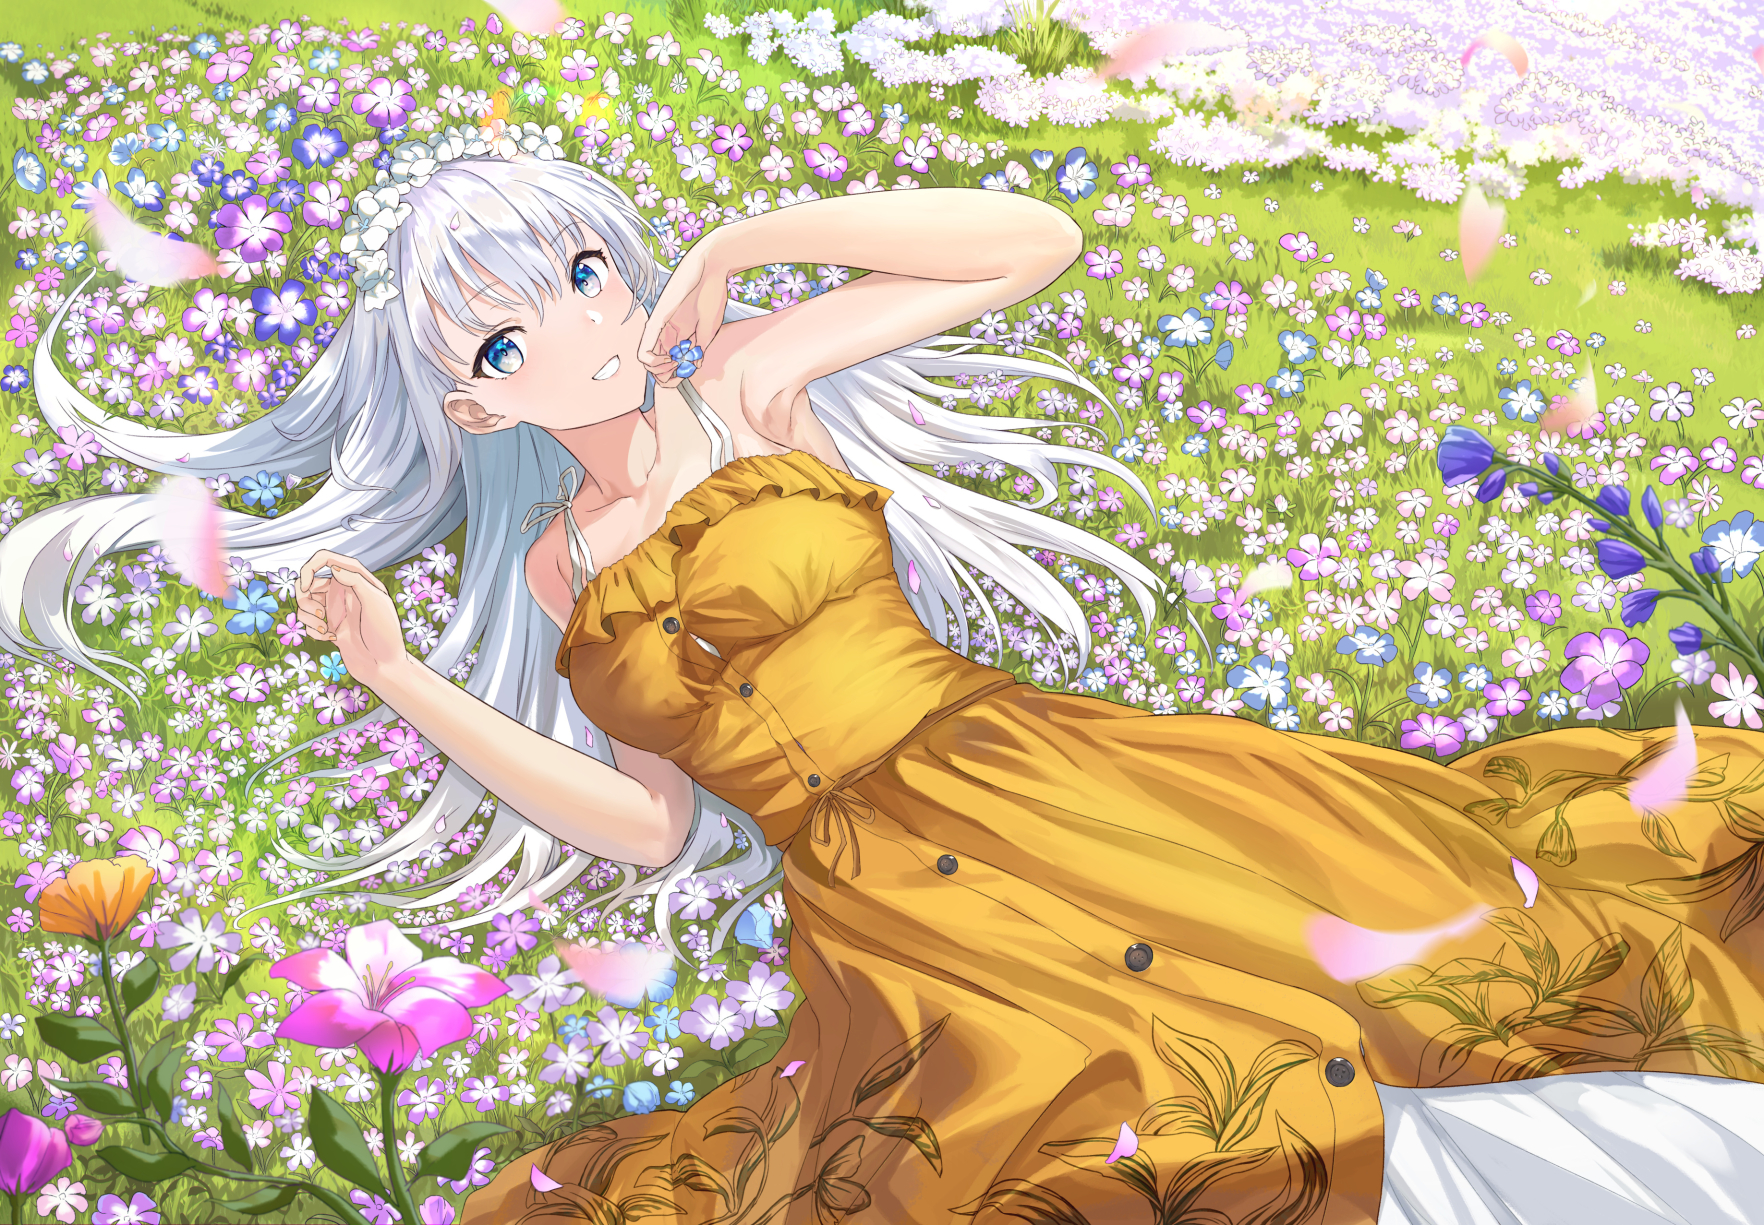 Anime 1764x1225 anime anime girls white hair flowers dress lying on back blue eyes smiling artwork MOSTA Ask